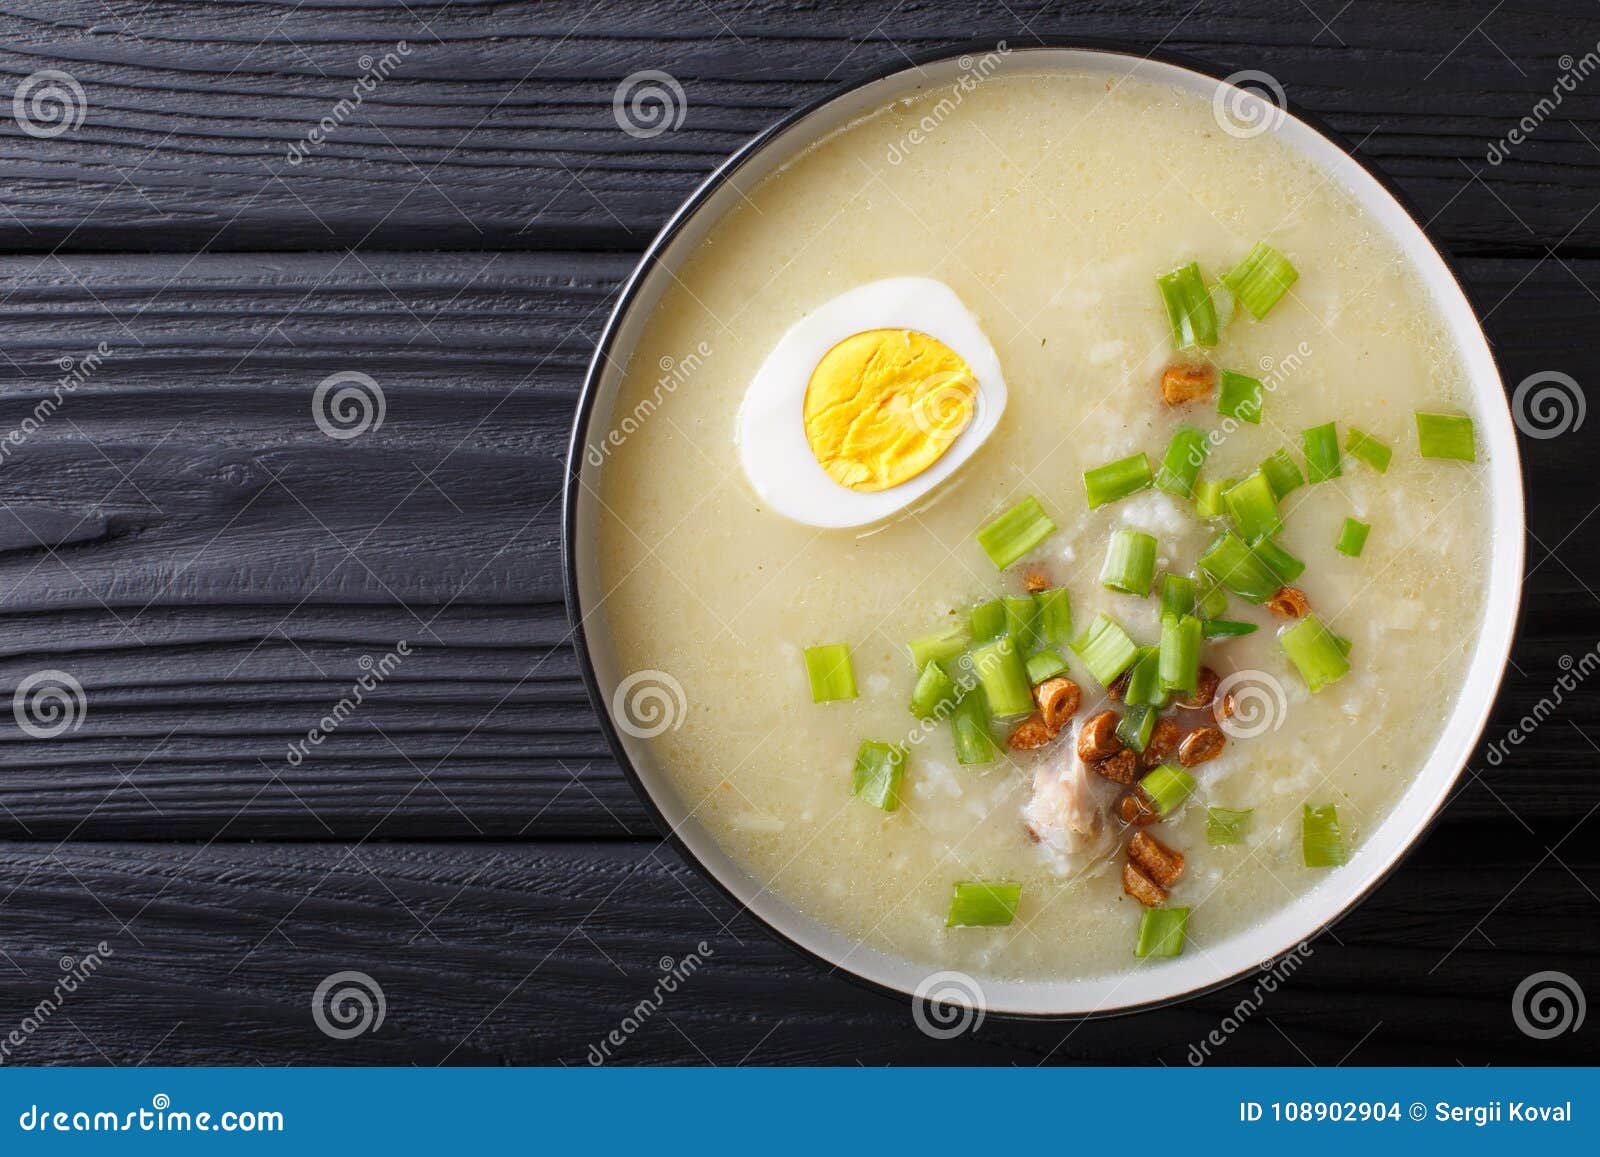 arroz caldo soup with rice, chicken and egg close-up. horizontal